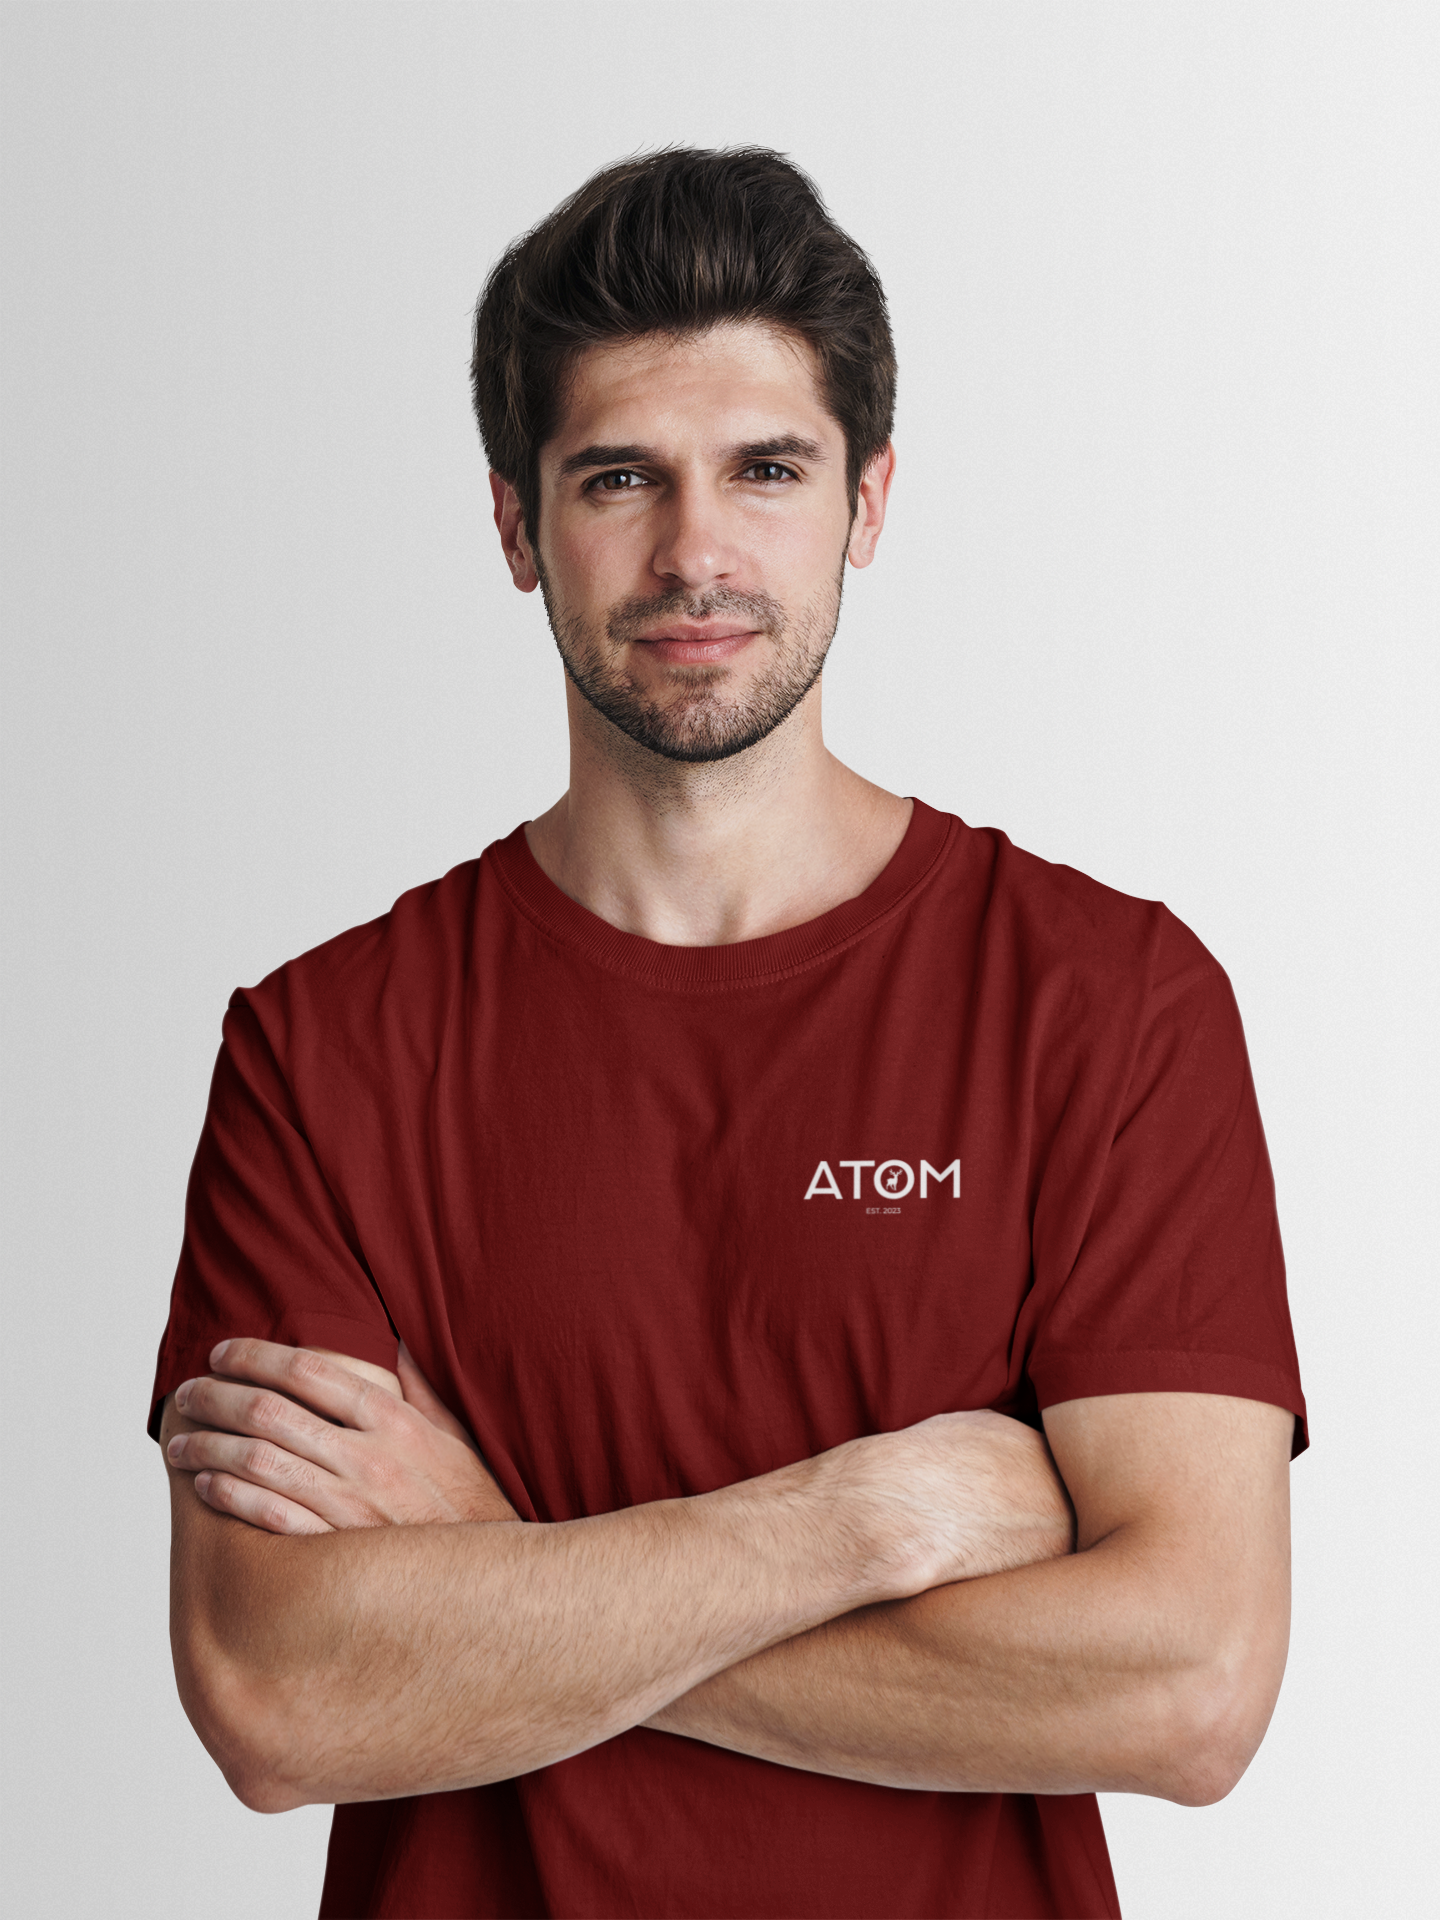 ATOM Logo Basic Marron Round Neck T-Shirt for Men.